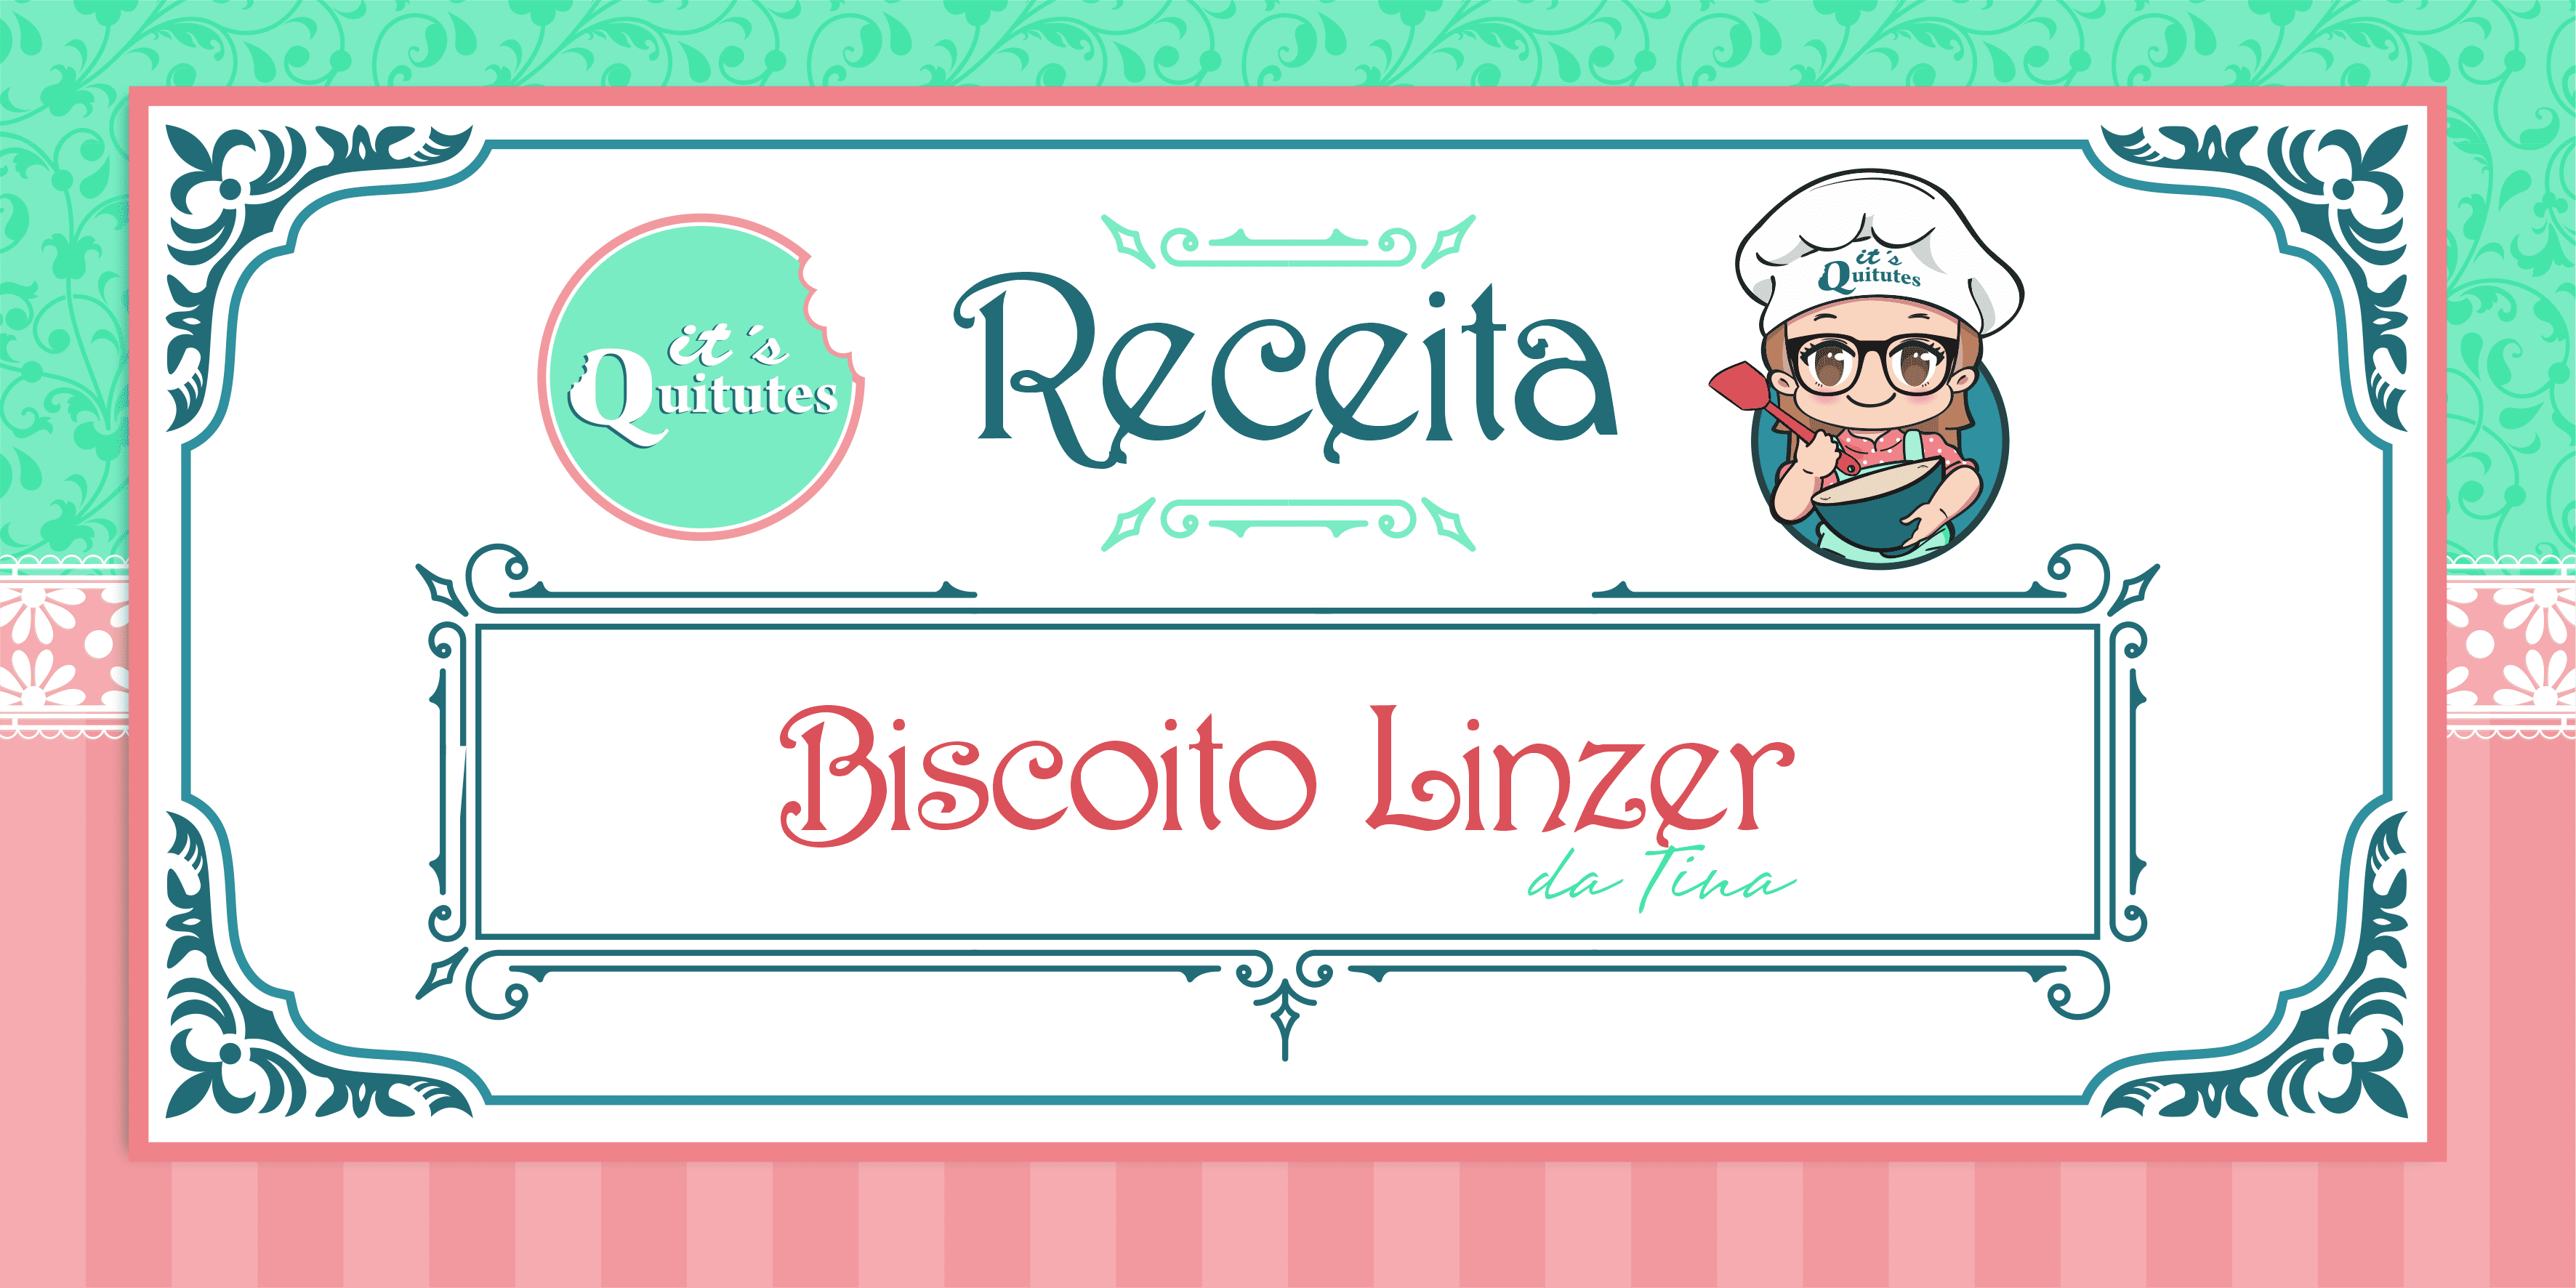 Biscoito Linzer